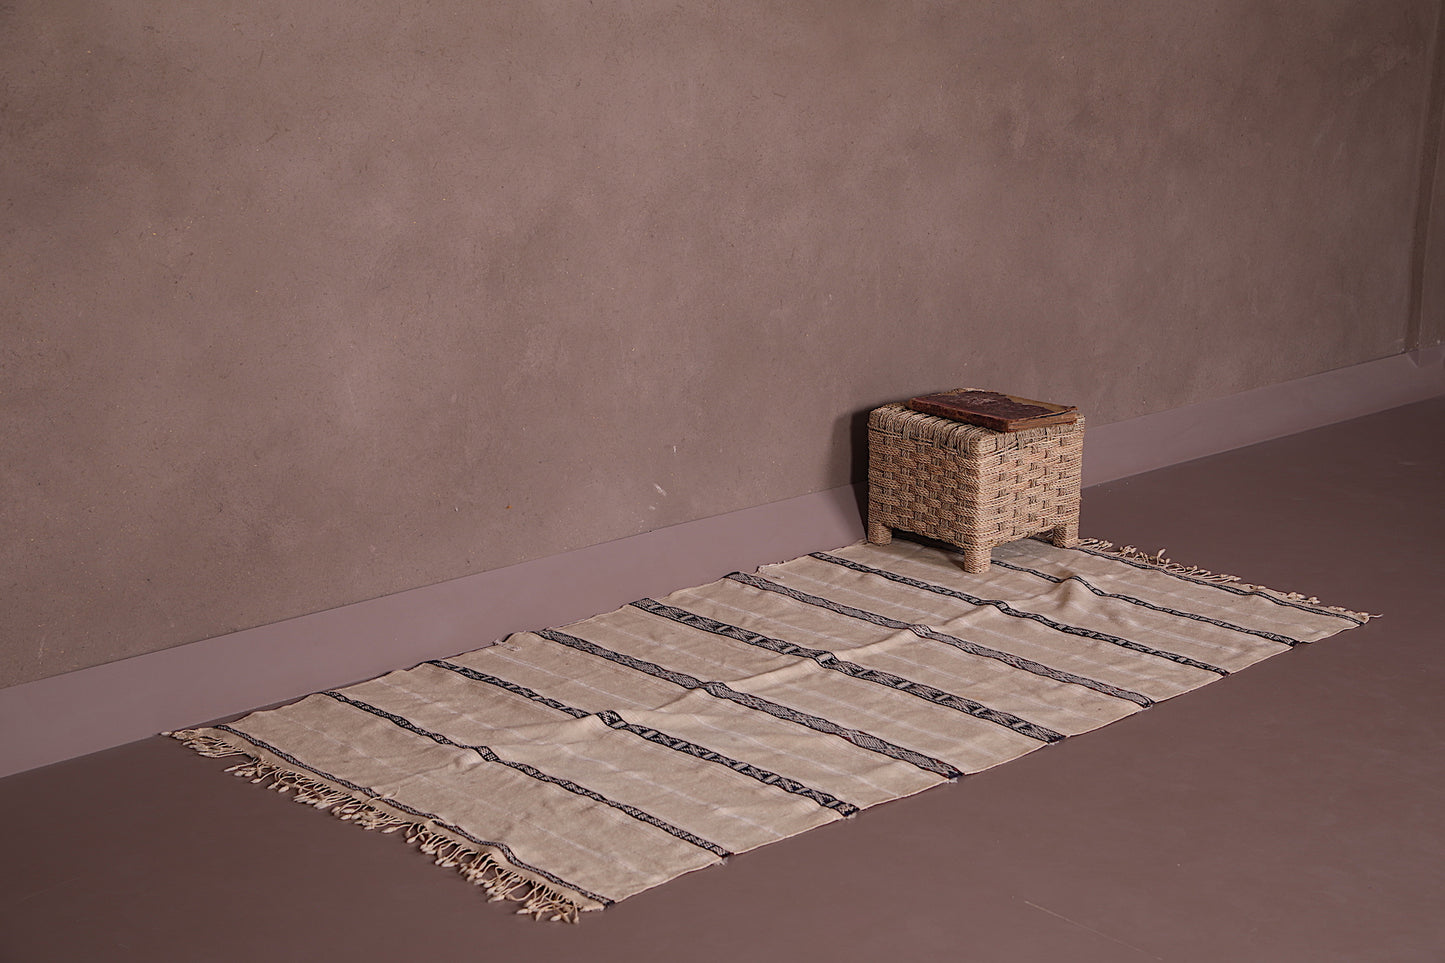 Runner tribal berber wedding rug 3.4 FT X 6.5 FT